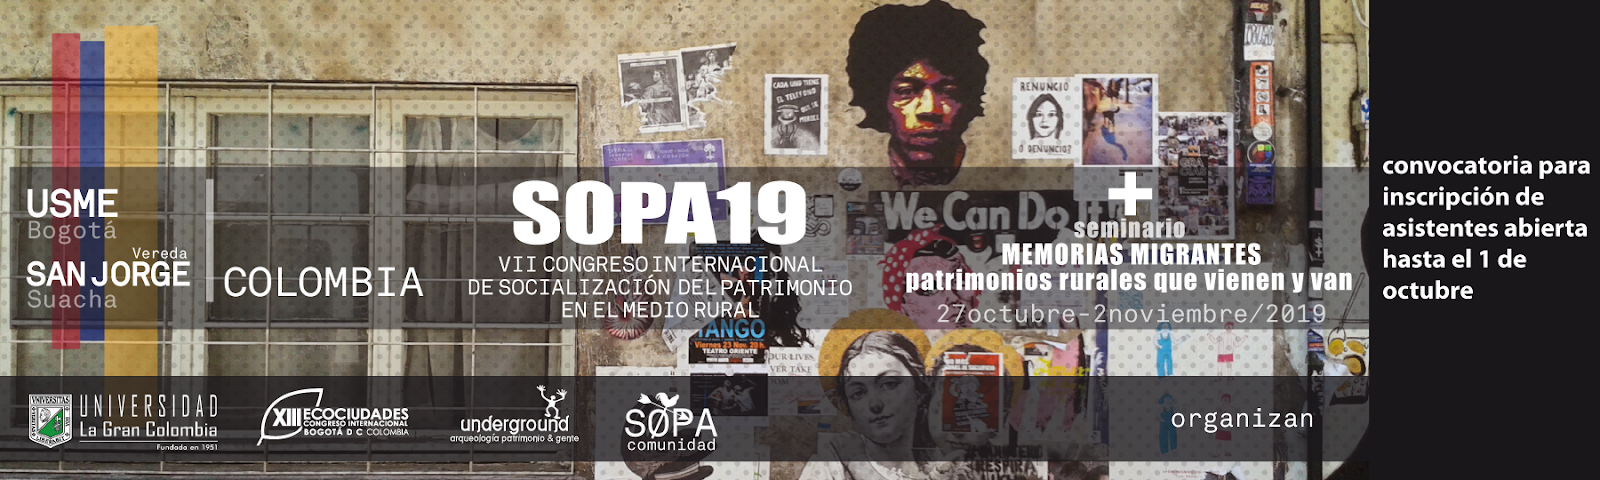 SOPA 19 Colombia